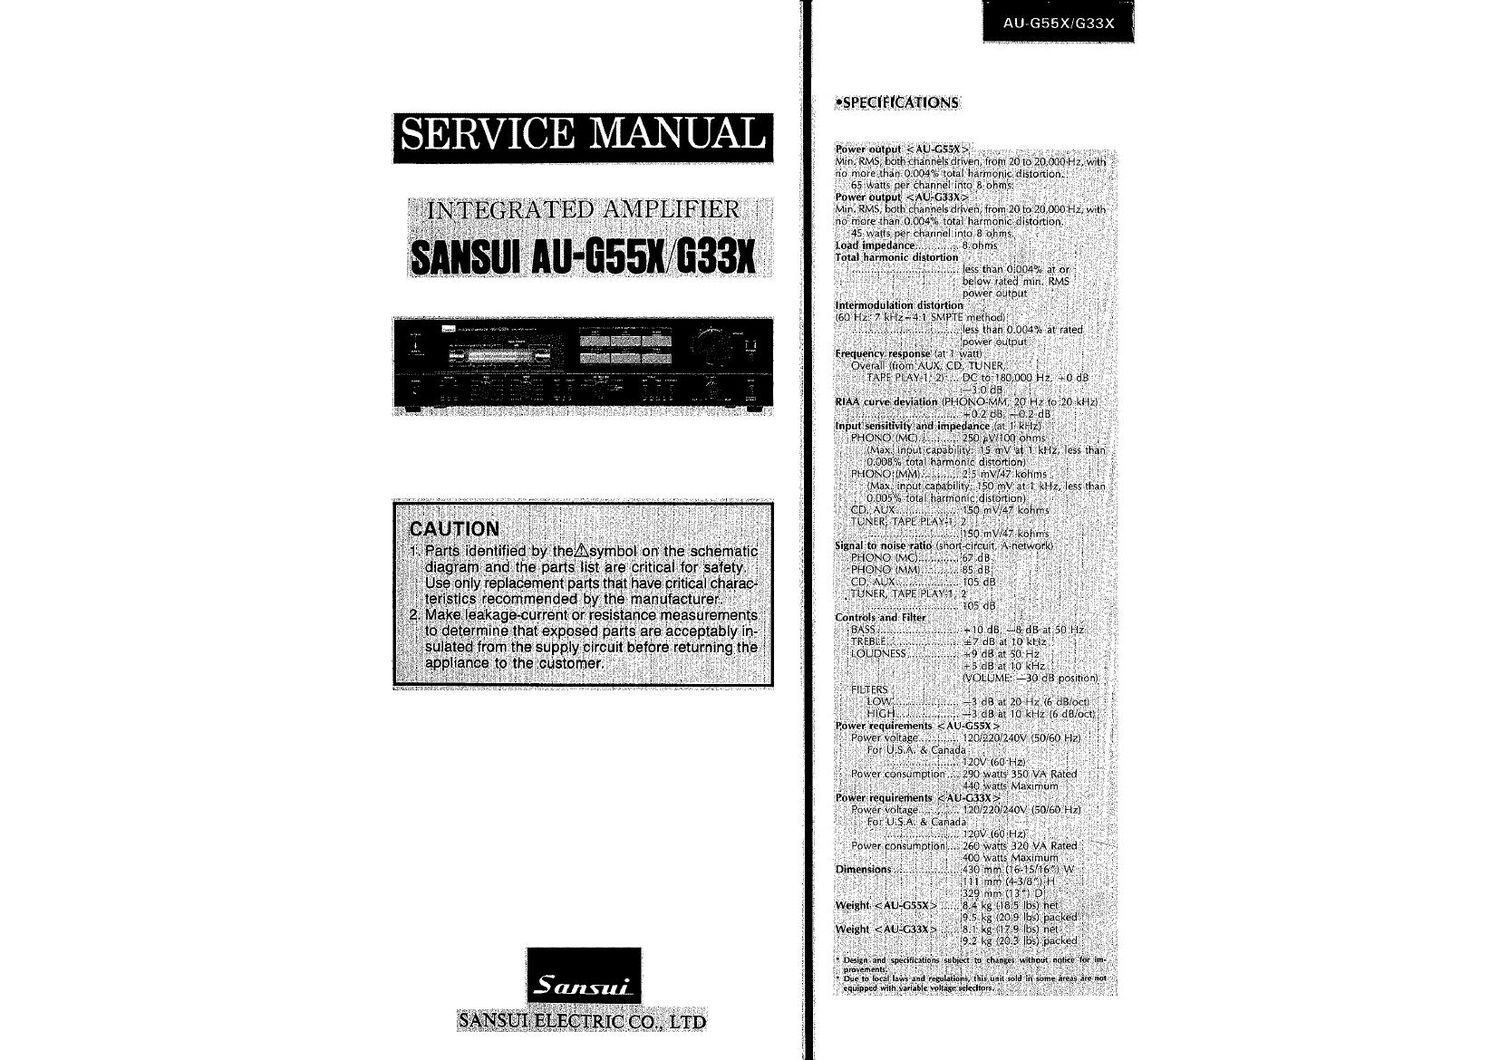 Sansui AUG 33 X Service Manual